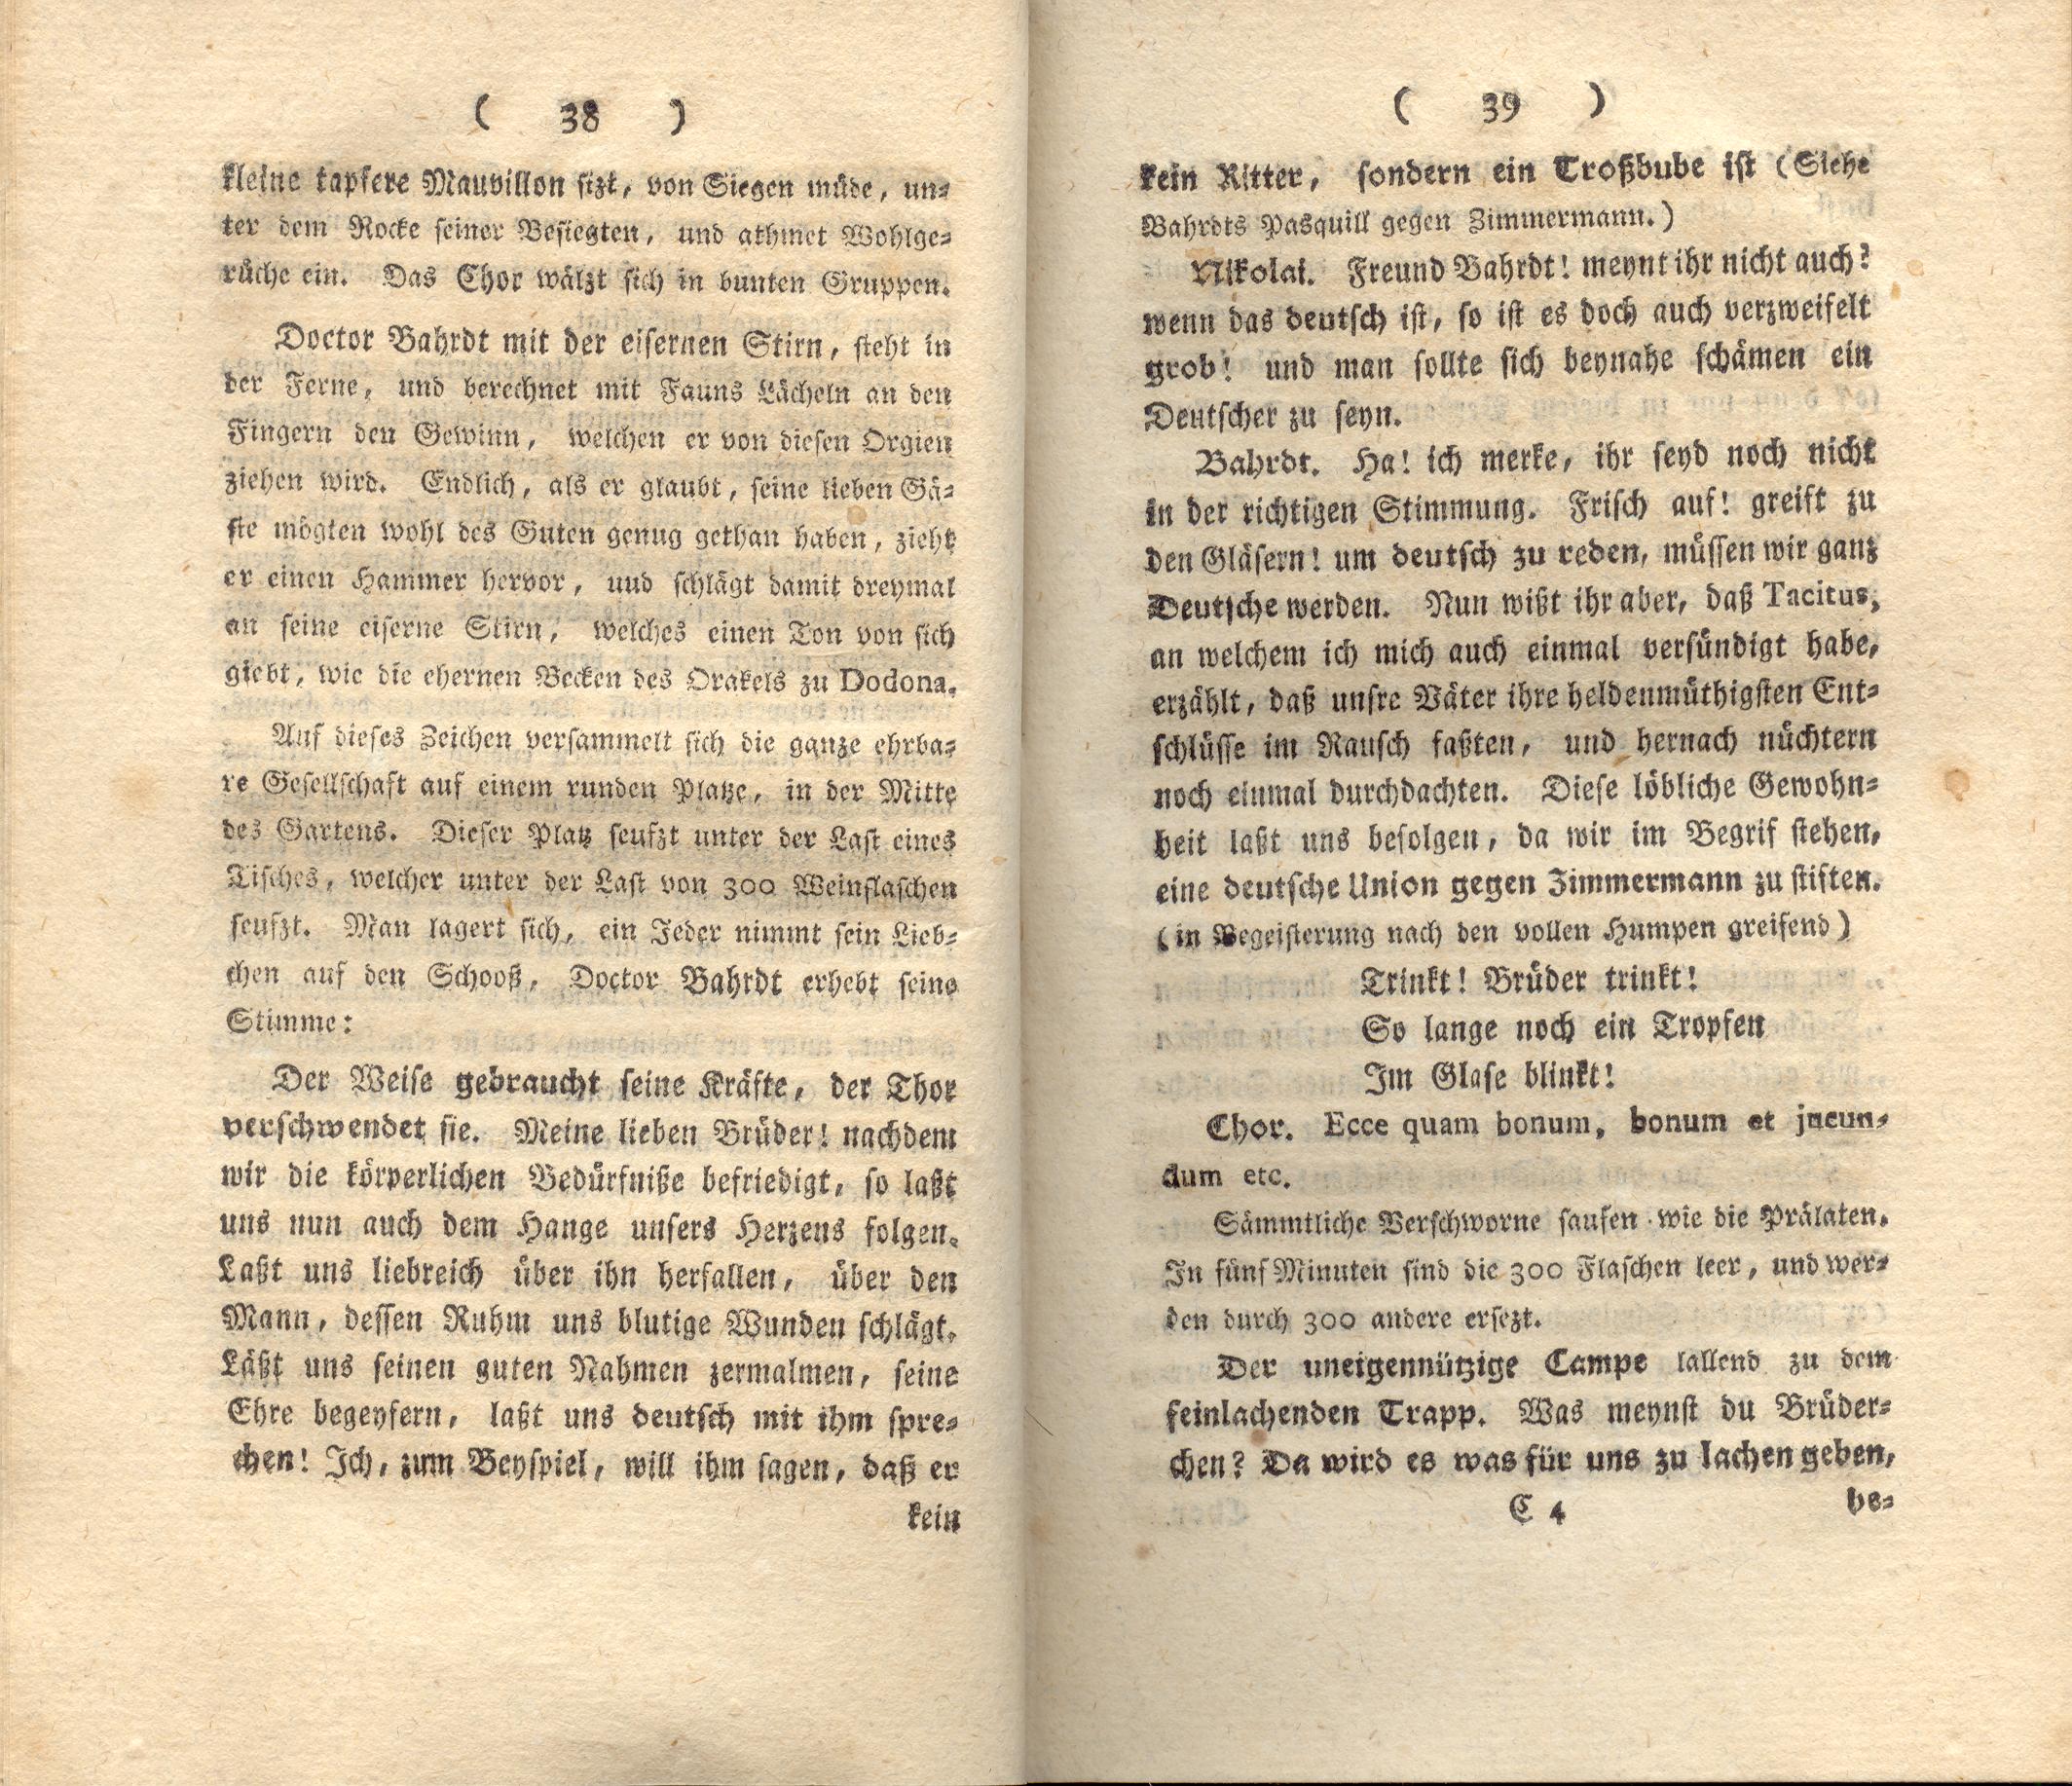 Doctor Bahrdt mit der eisernen Stirn (1790) | 21. (38-39) Haupttext